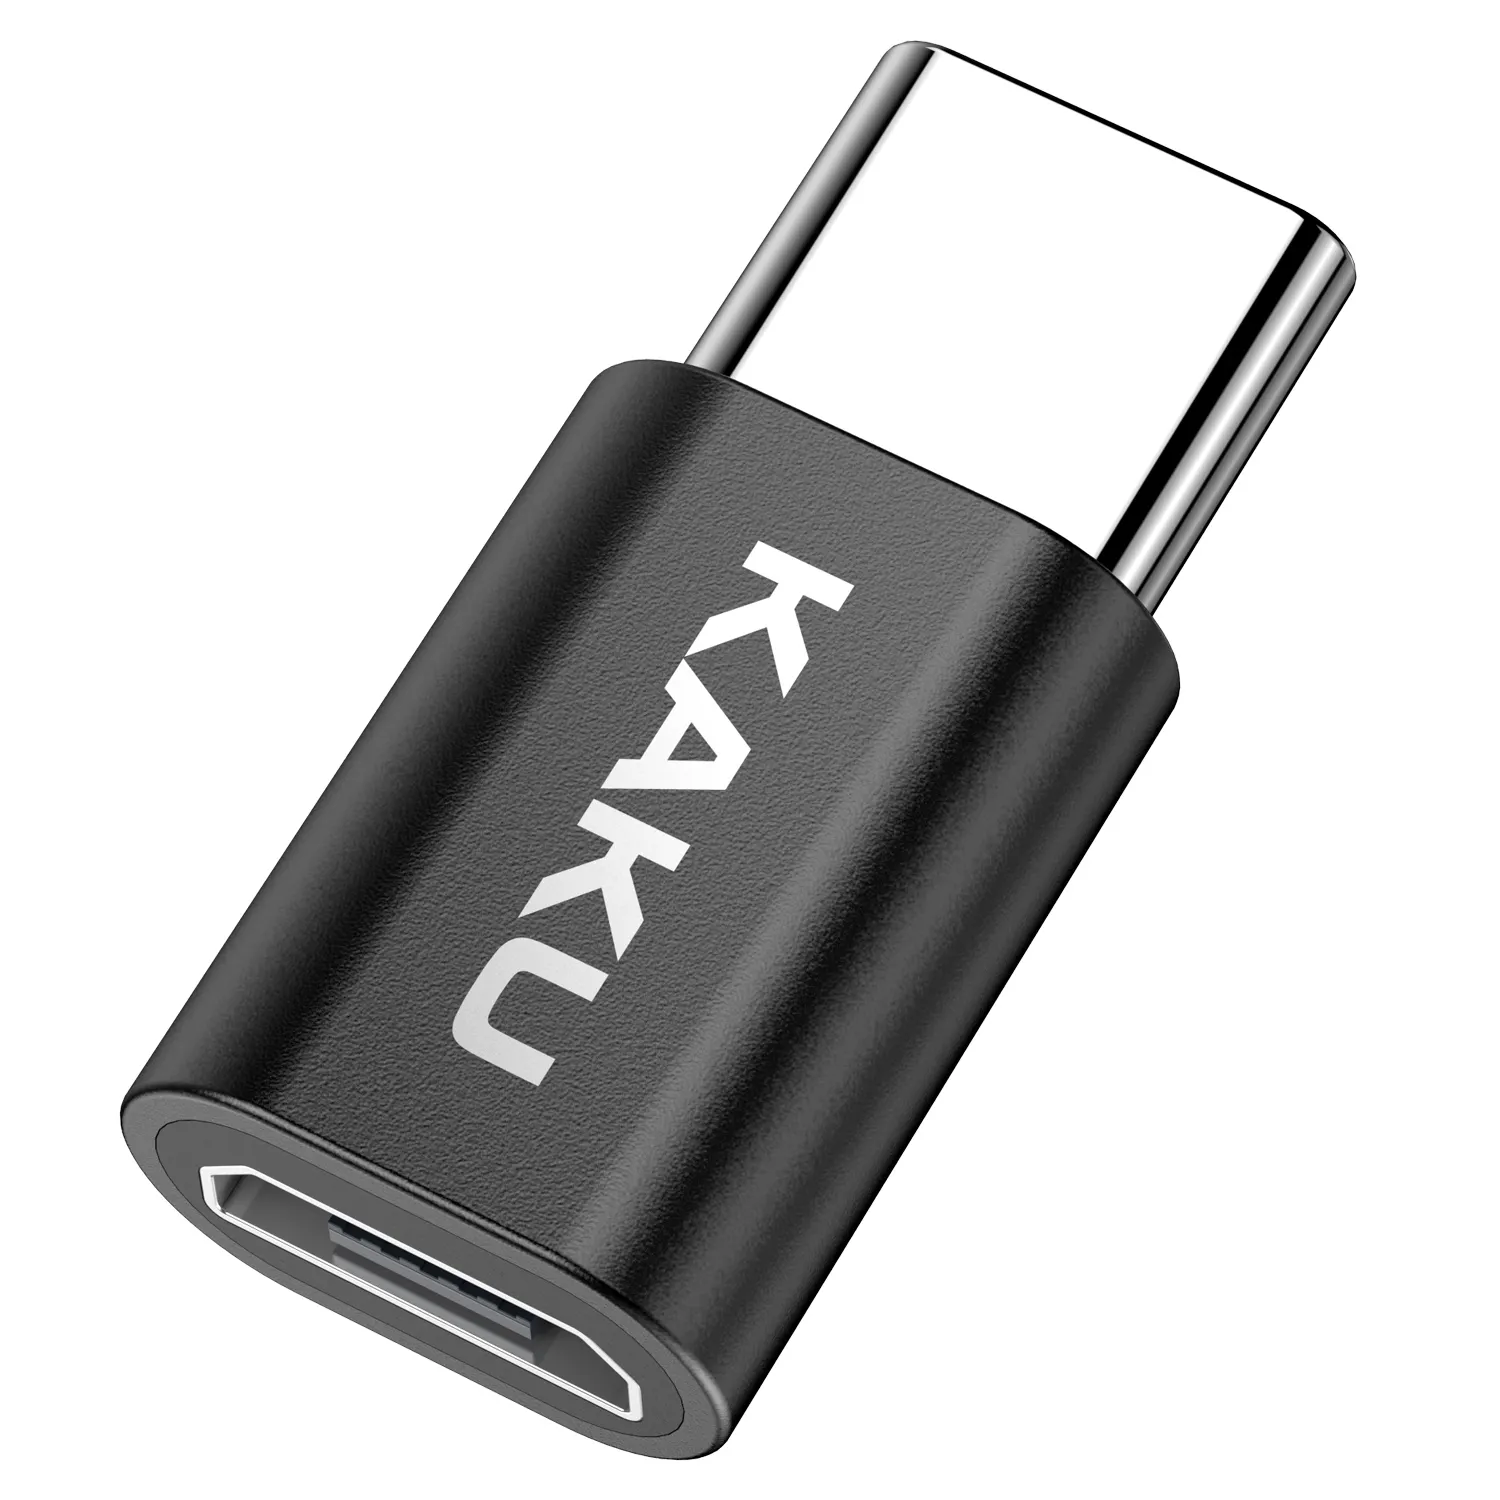 KAKU trasmissione ad alta velocità USB 3.0 tipo C femmina a Micro USB maschio adattatore convertitore USB-C nero